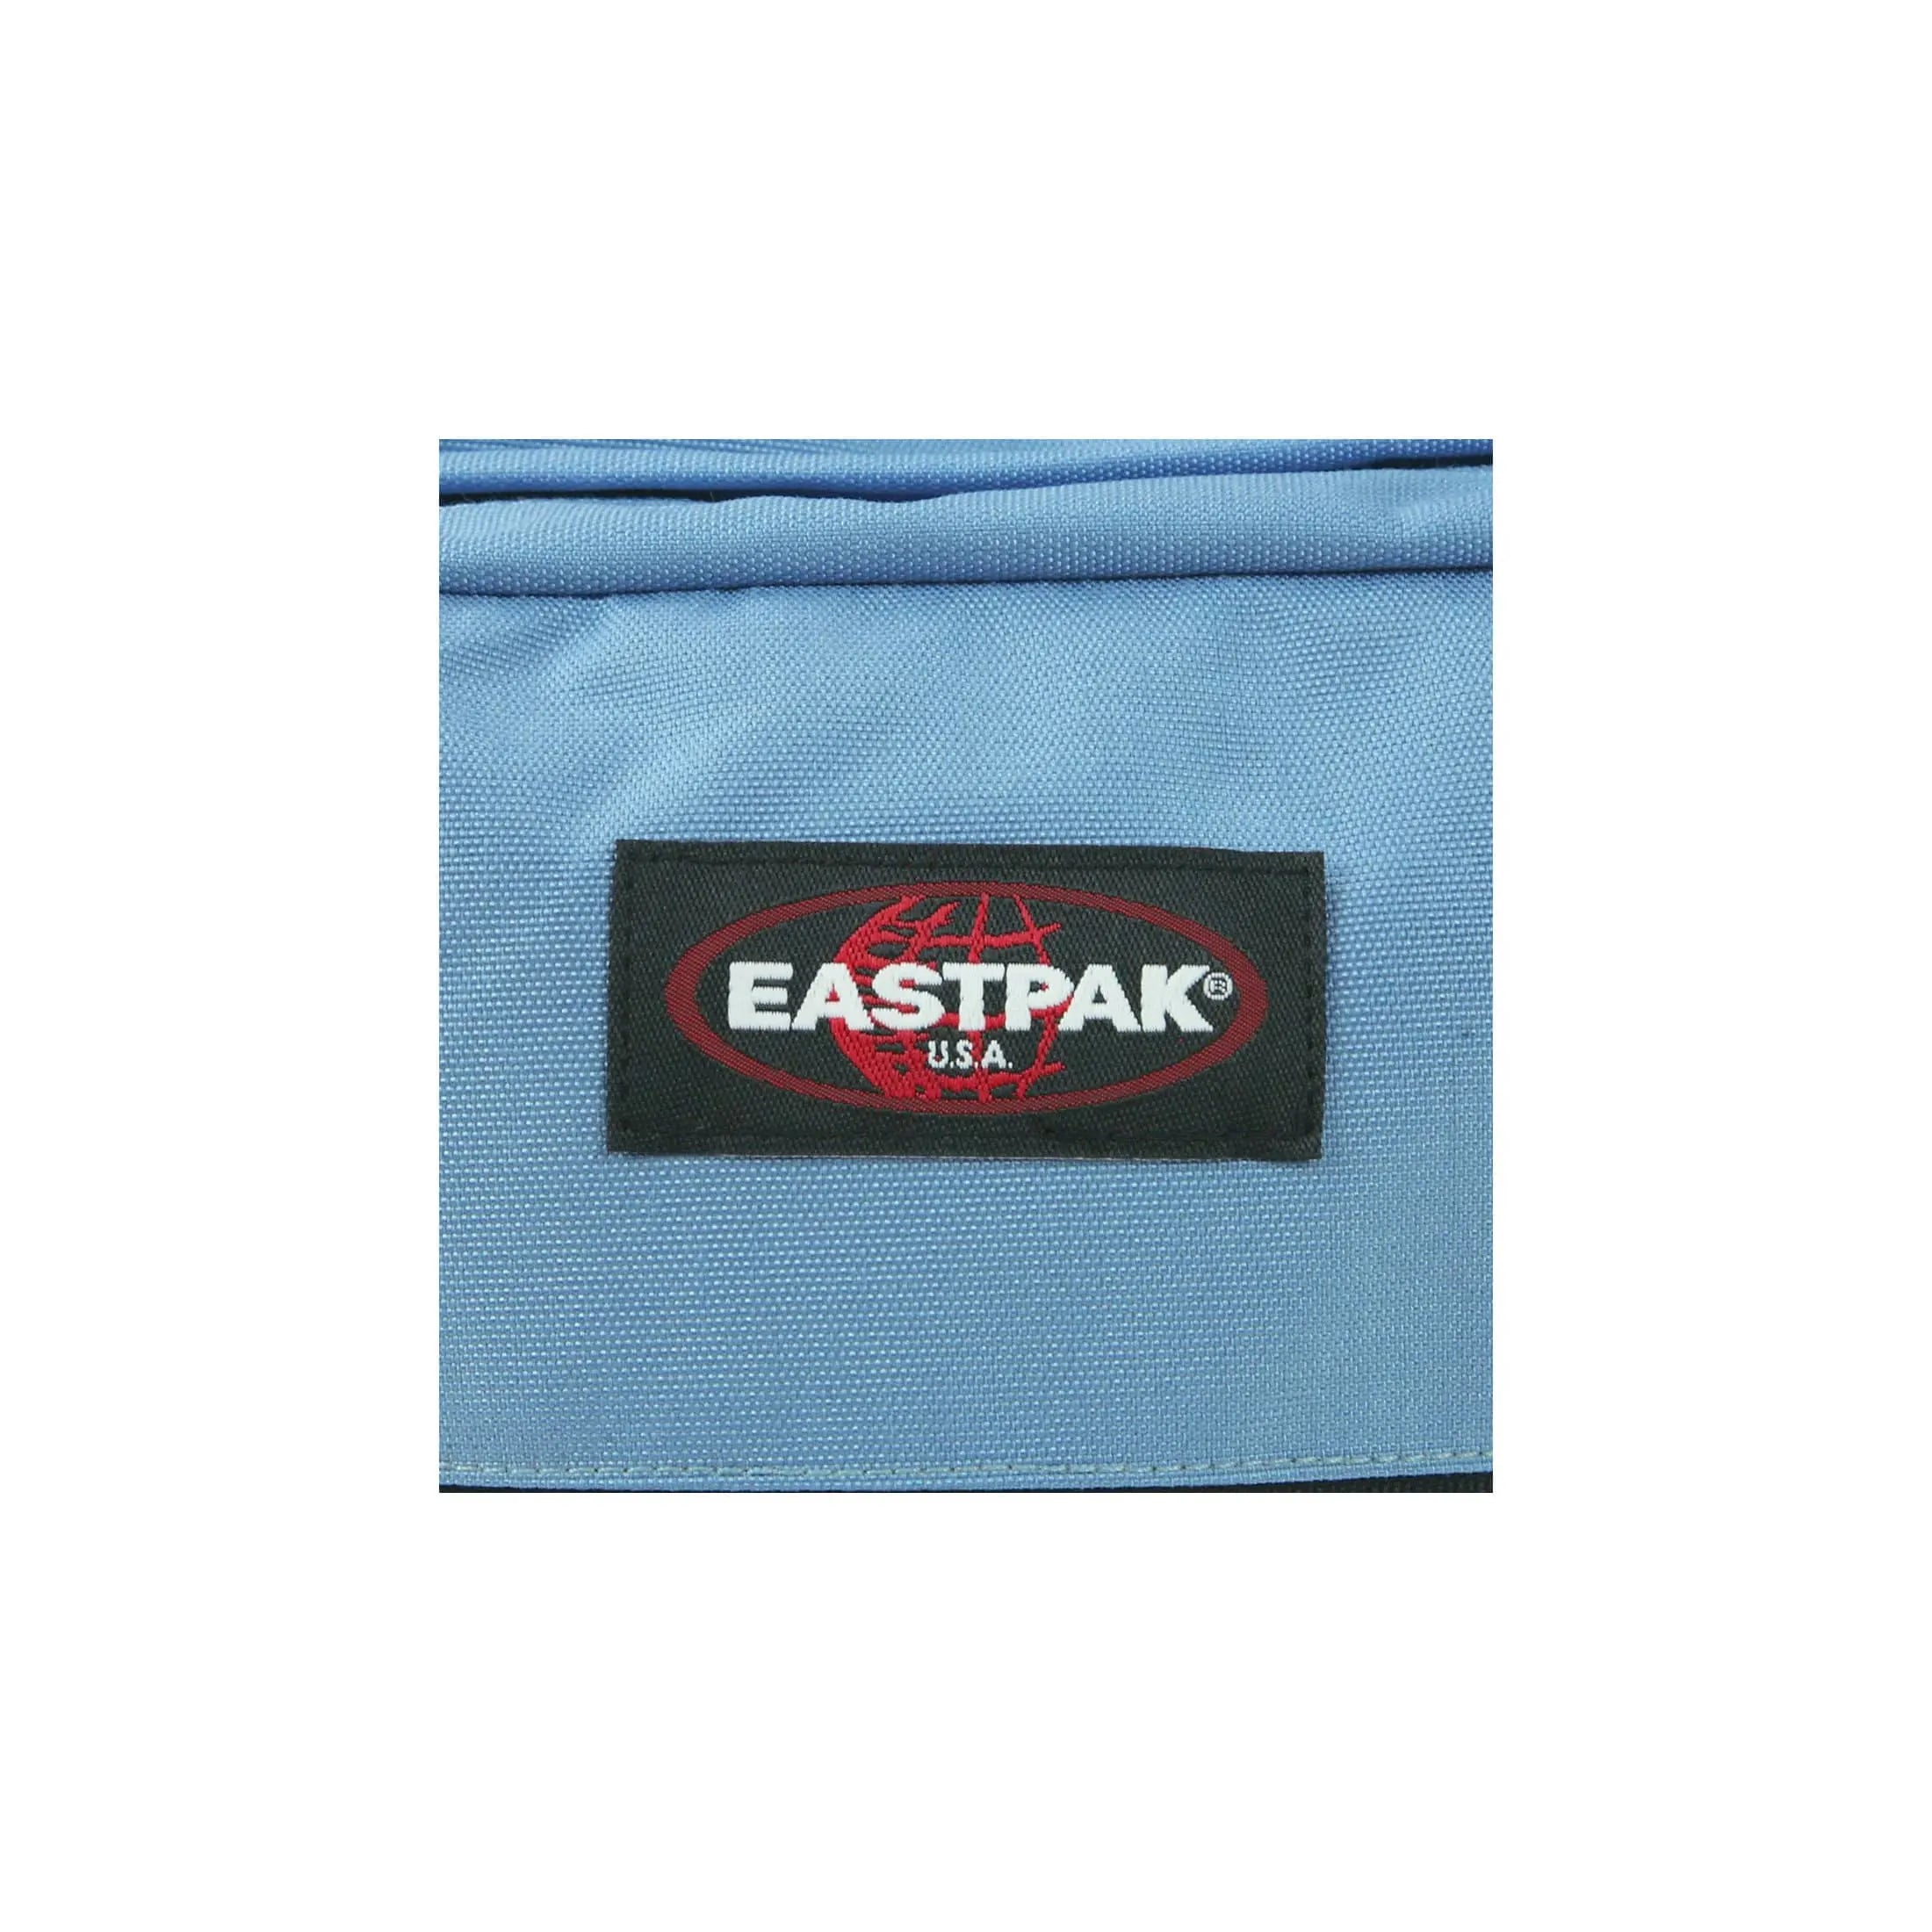 Eastpak Backpack Pinnacle Sailor Red